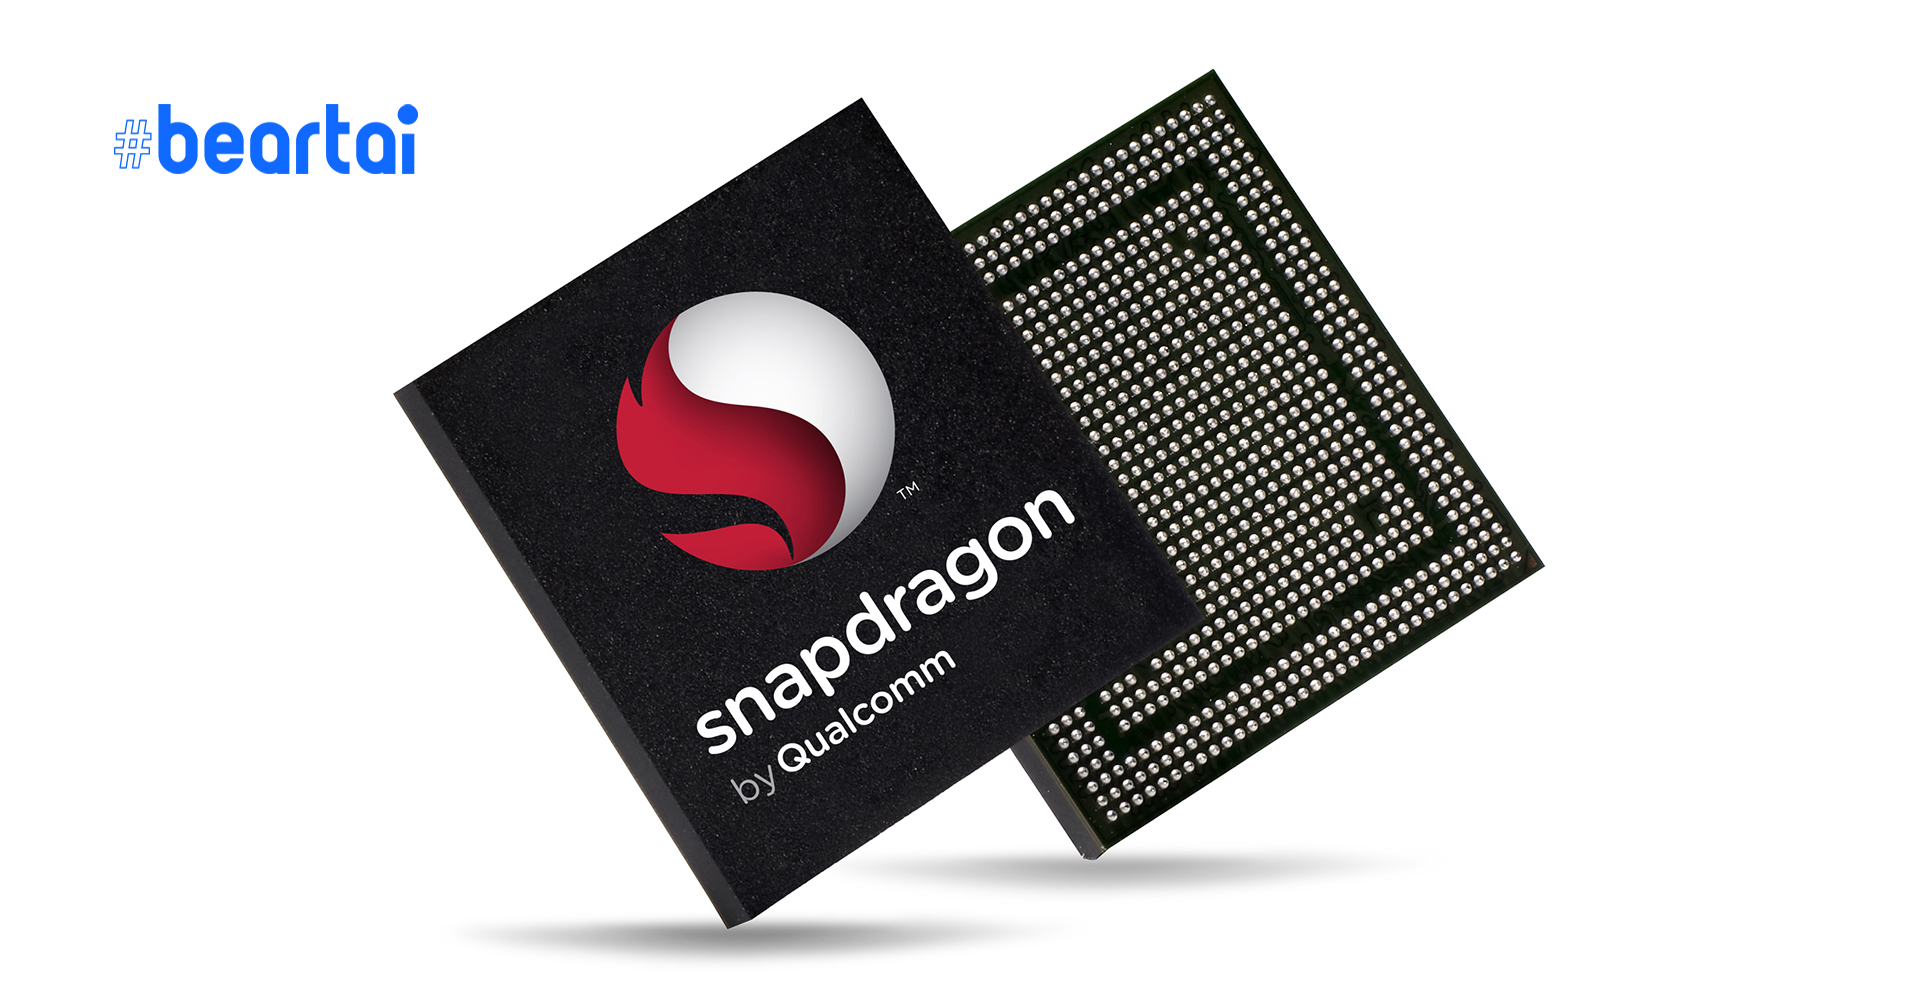 ผลทดสอบล่าสุดชี้ : Snapdragon 875 ทำคะแนนประมวลผลสูงกว่า Kirin 9000